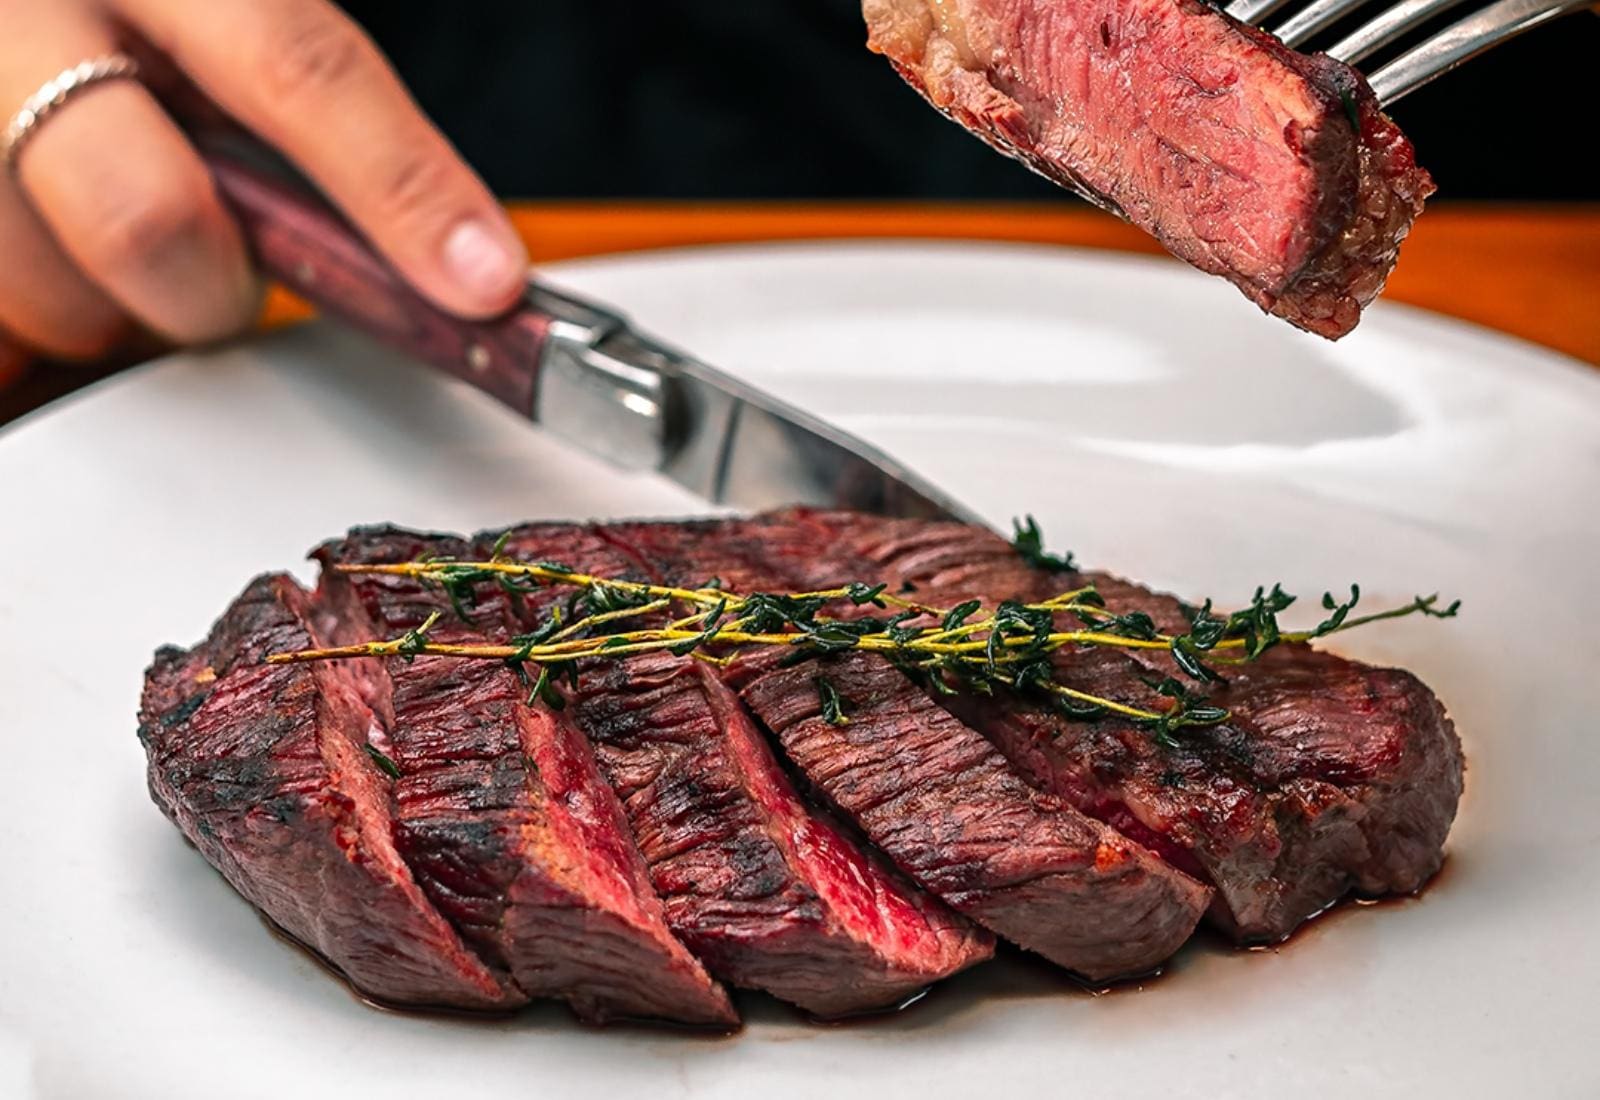 The best steak restaurants in London Luxury London